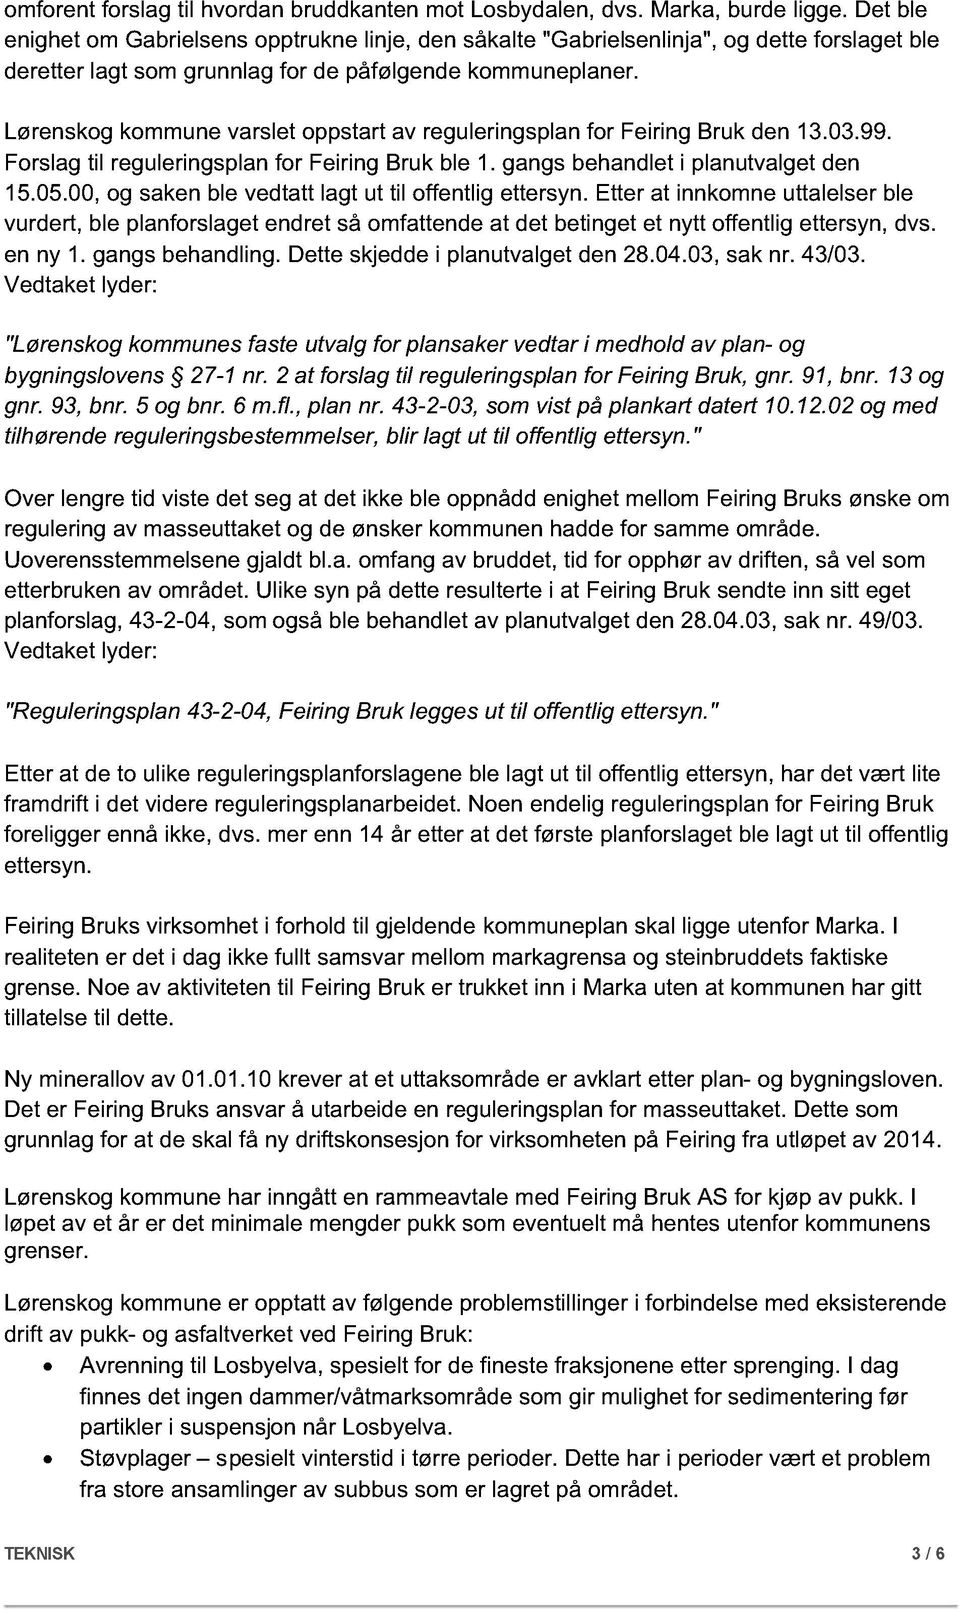 Lørenskog kommune varslet oppstart av reguleringsplan for Feiring Bruk den 13.03.99. Forslag til reguleringsplan for Feiring Bruk ble 1. gangs behandlet i planutvalget den 15.05.